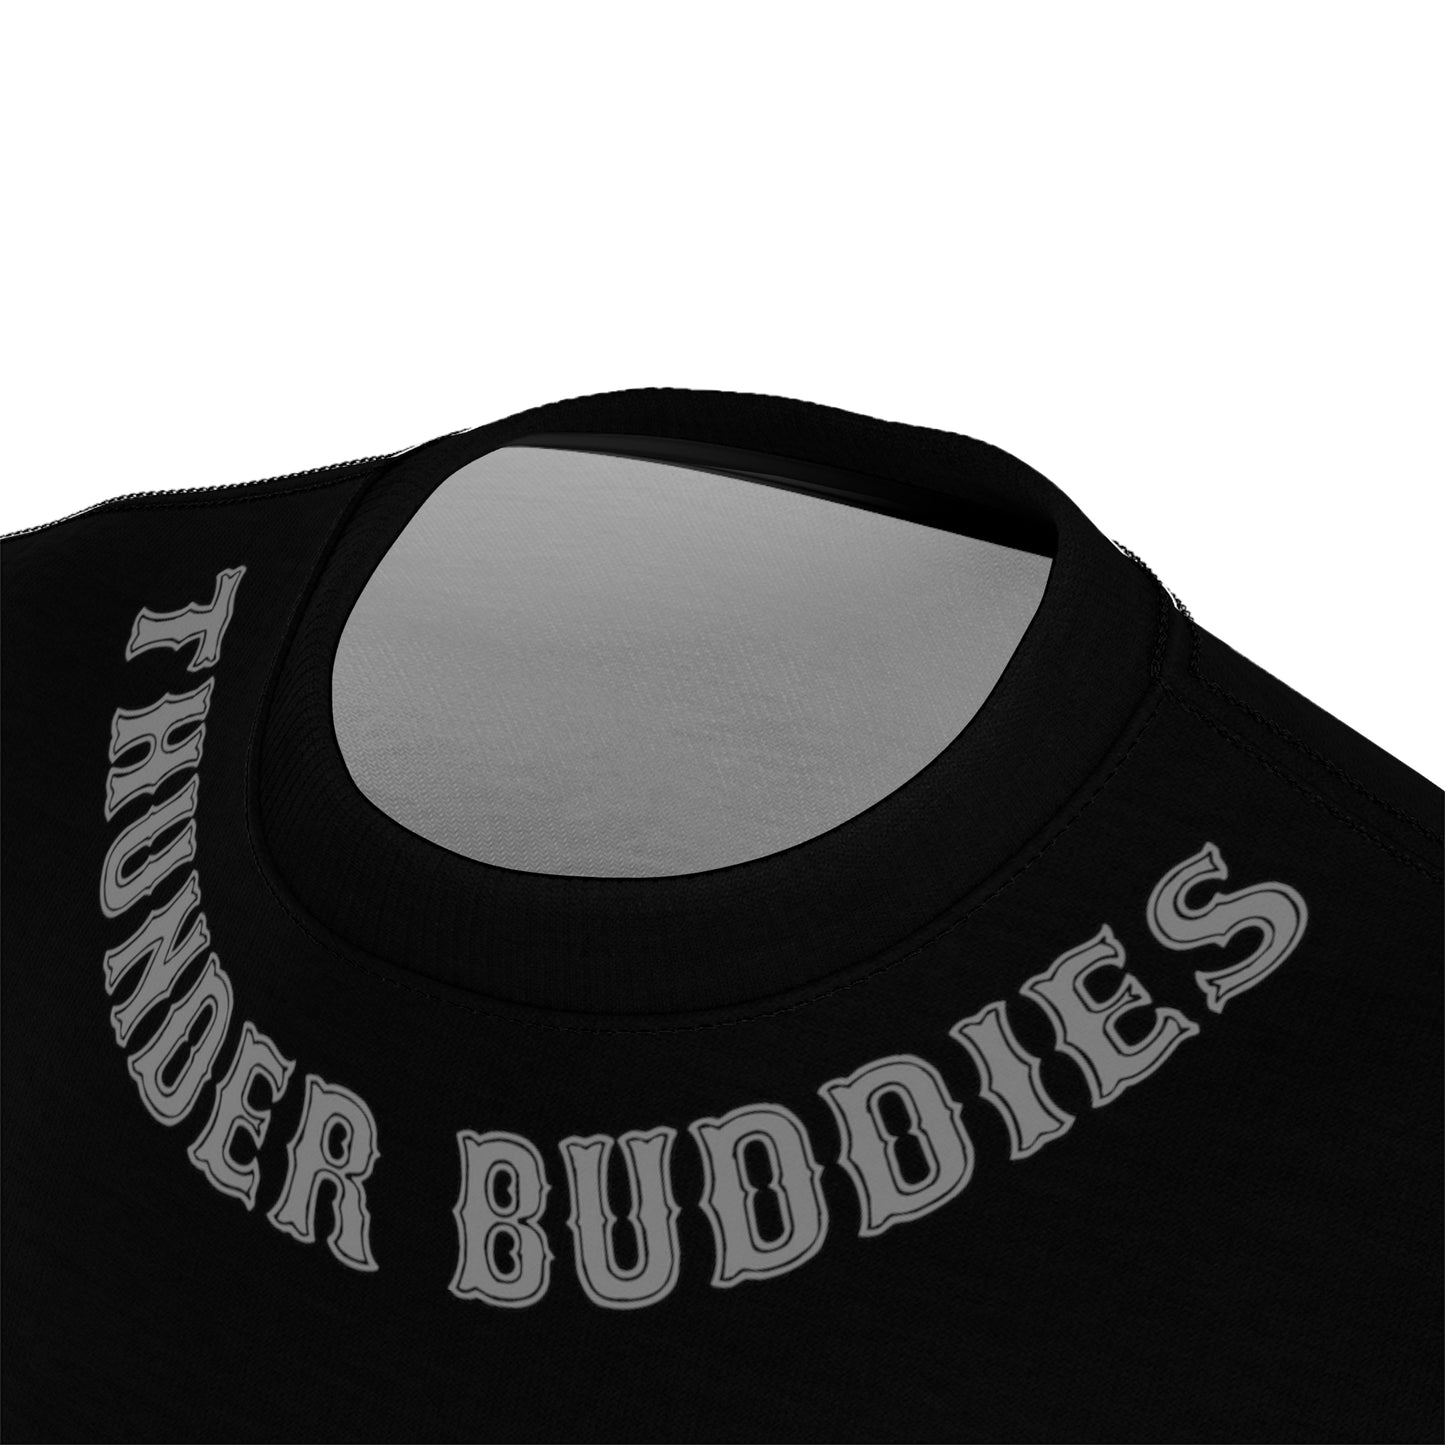 Unisex Thunder Buddies Tee - Black